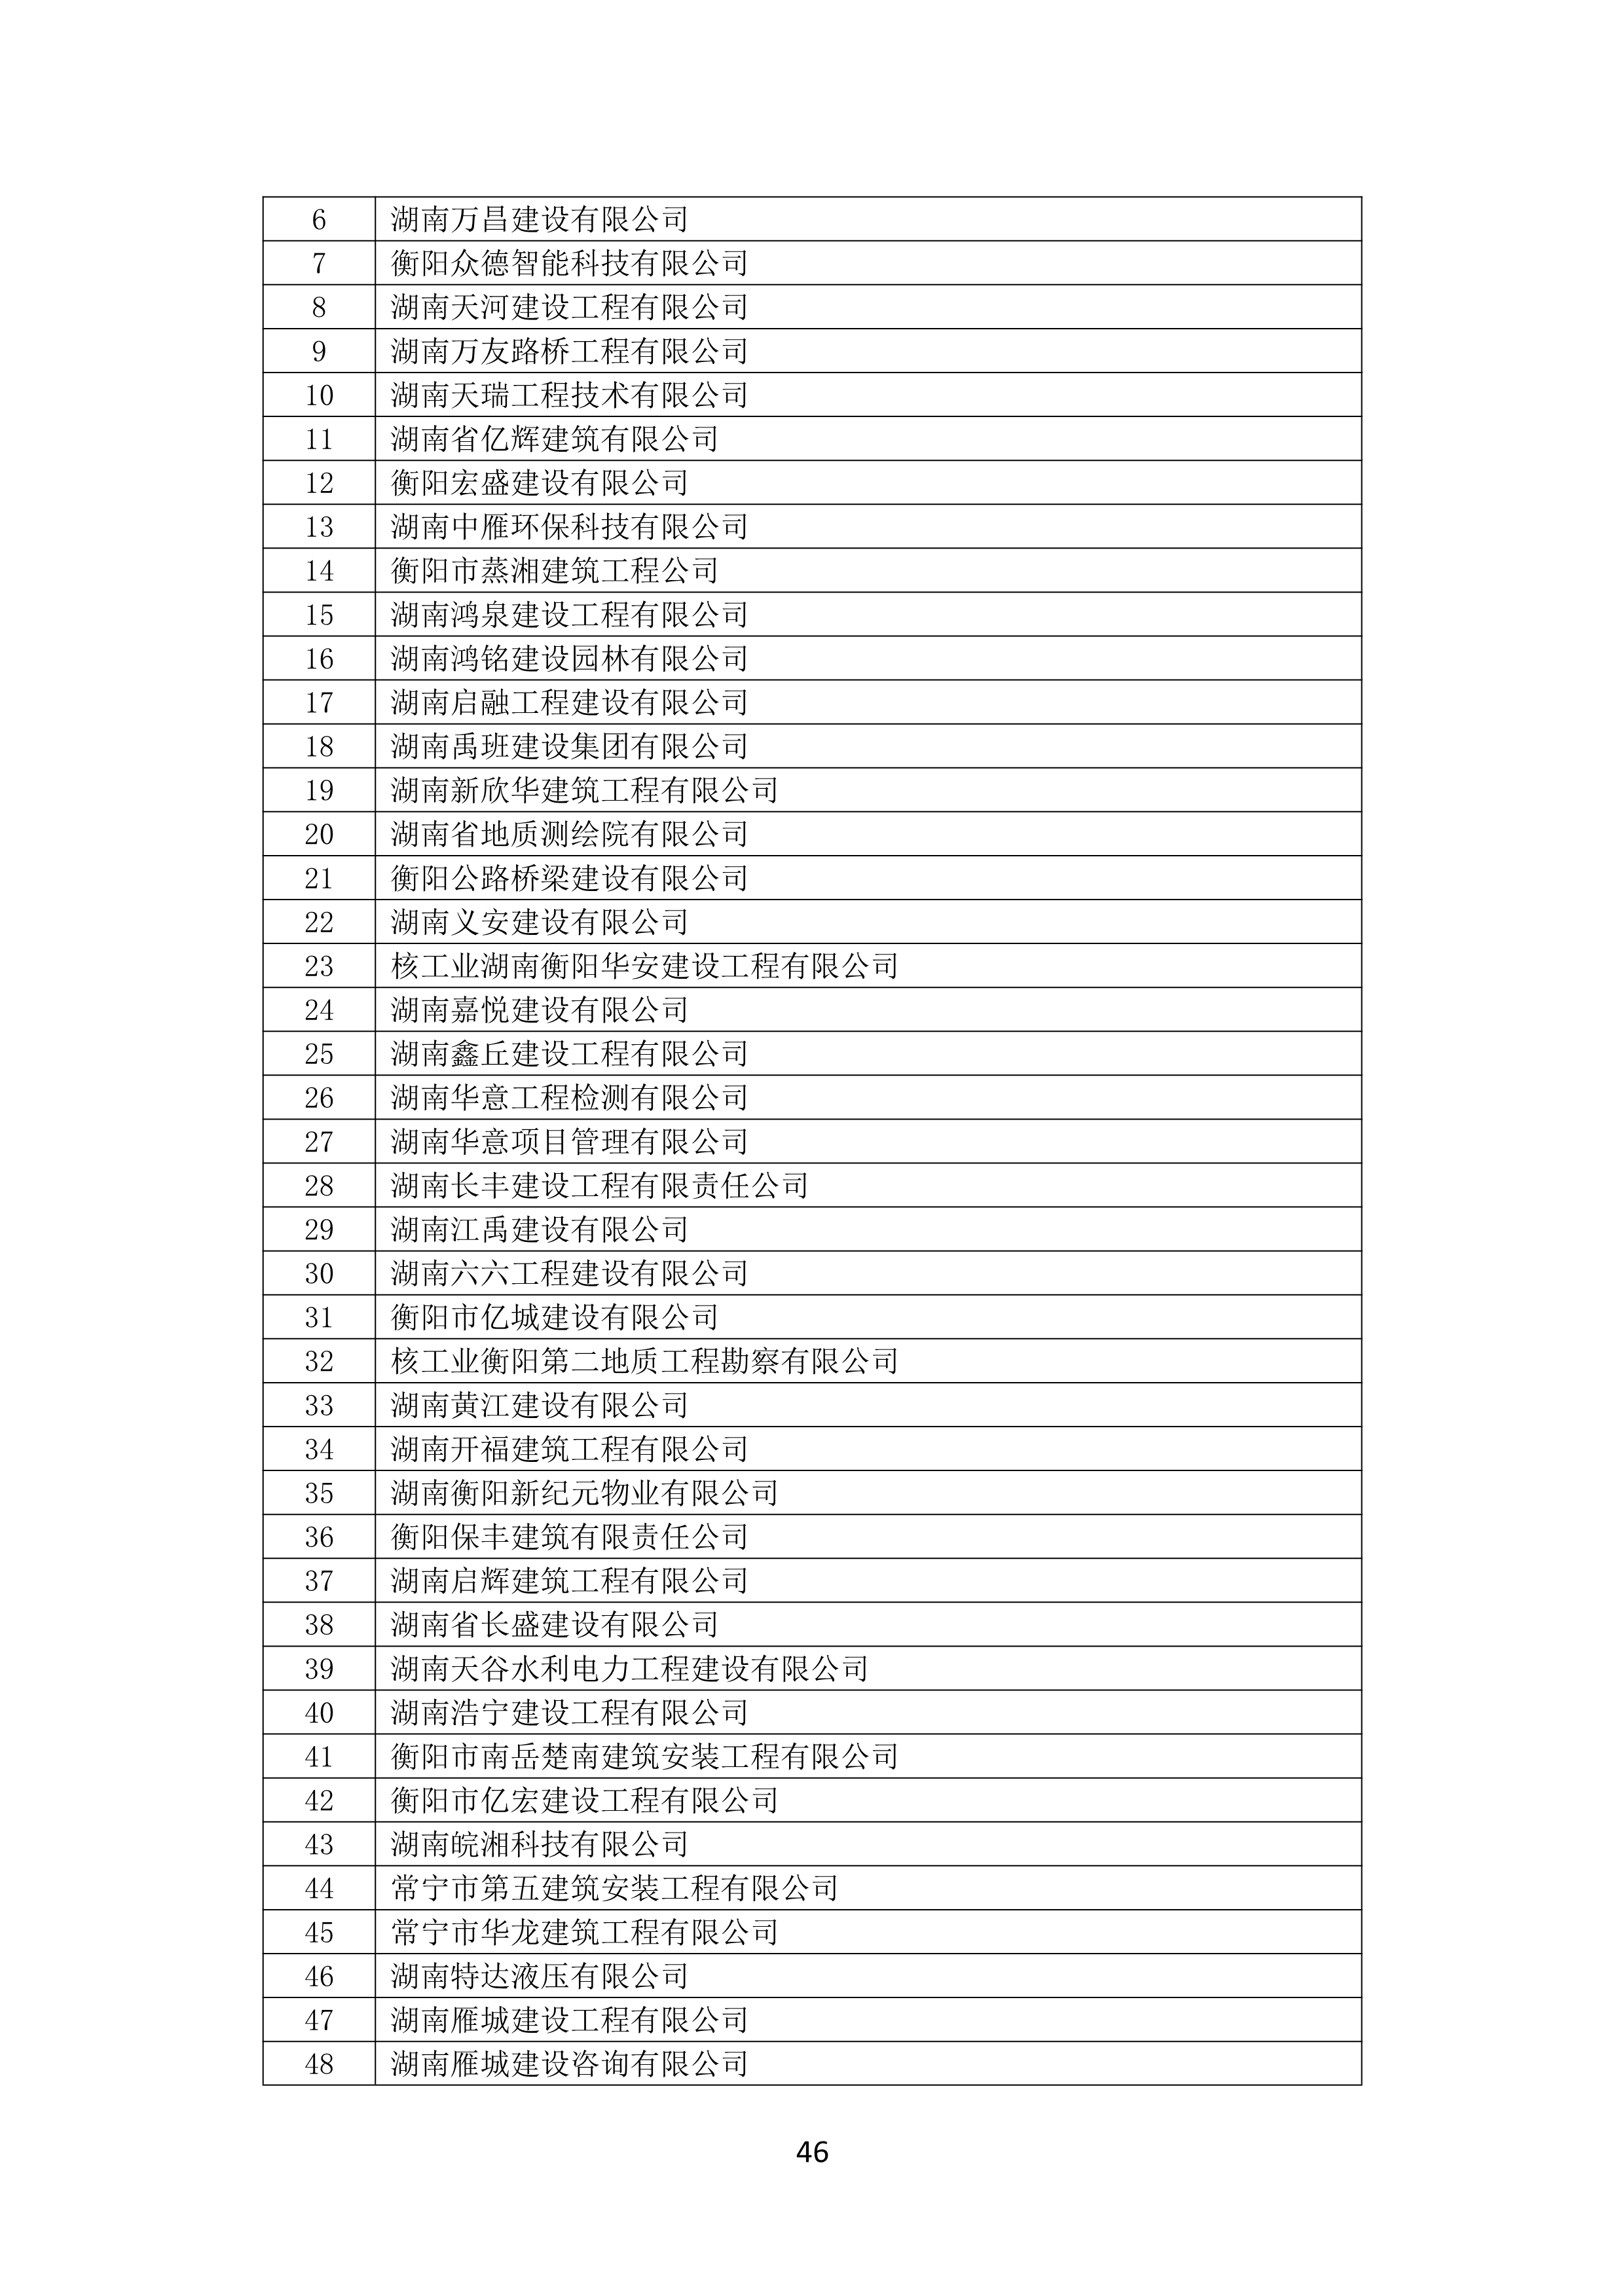 2021 年(nián)度湖南省守合同重信用企業名單_47.png